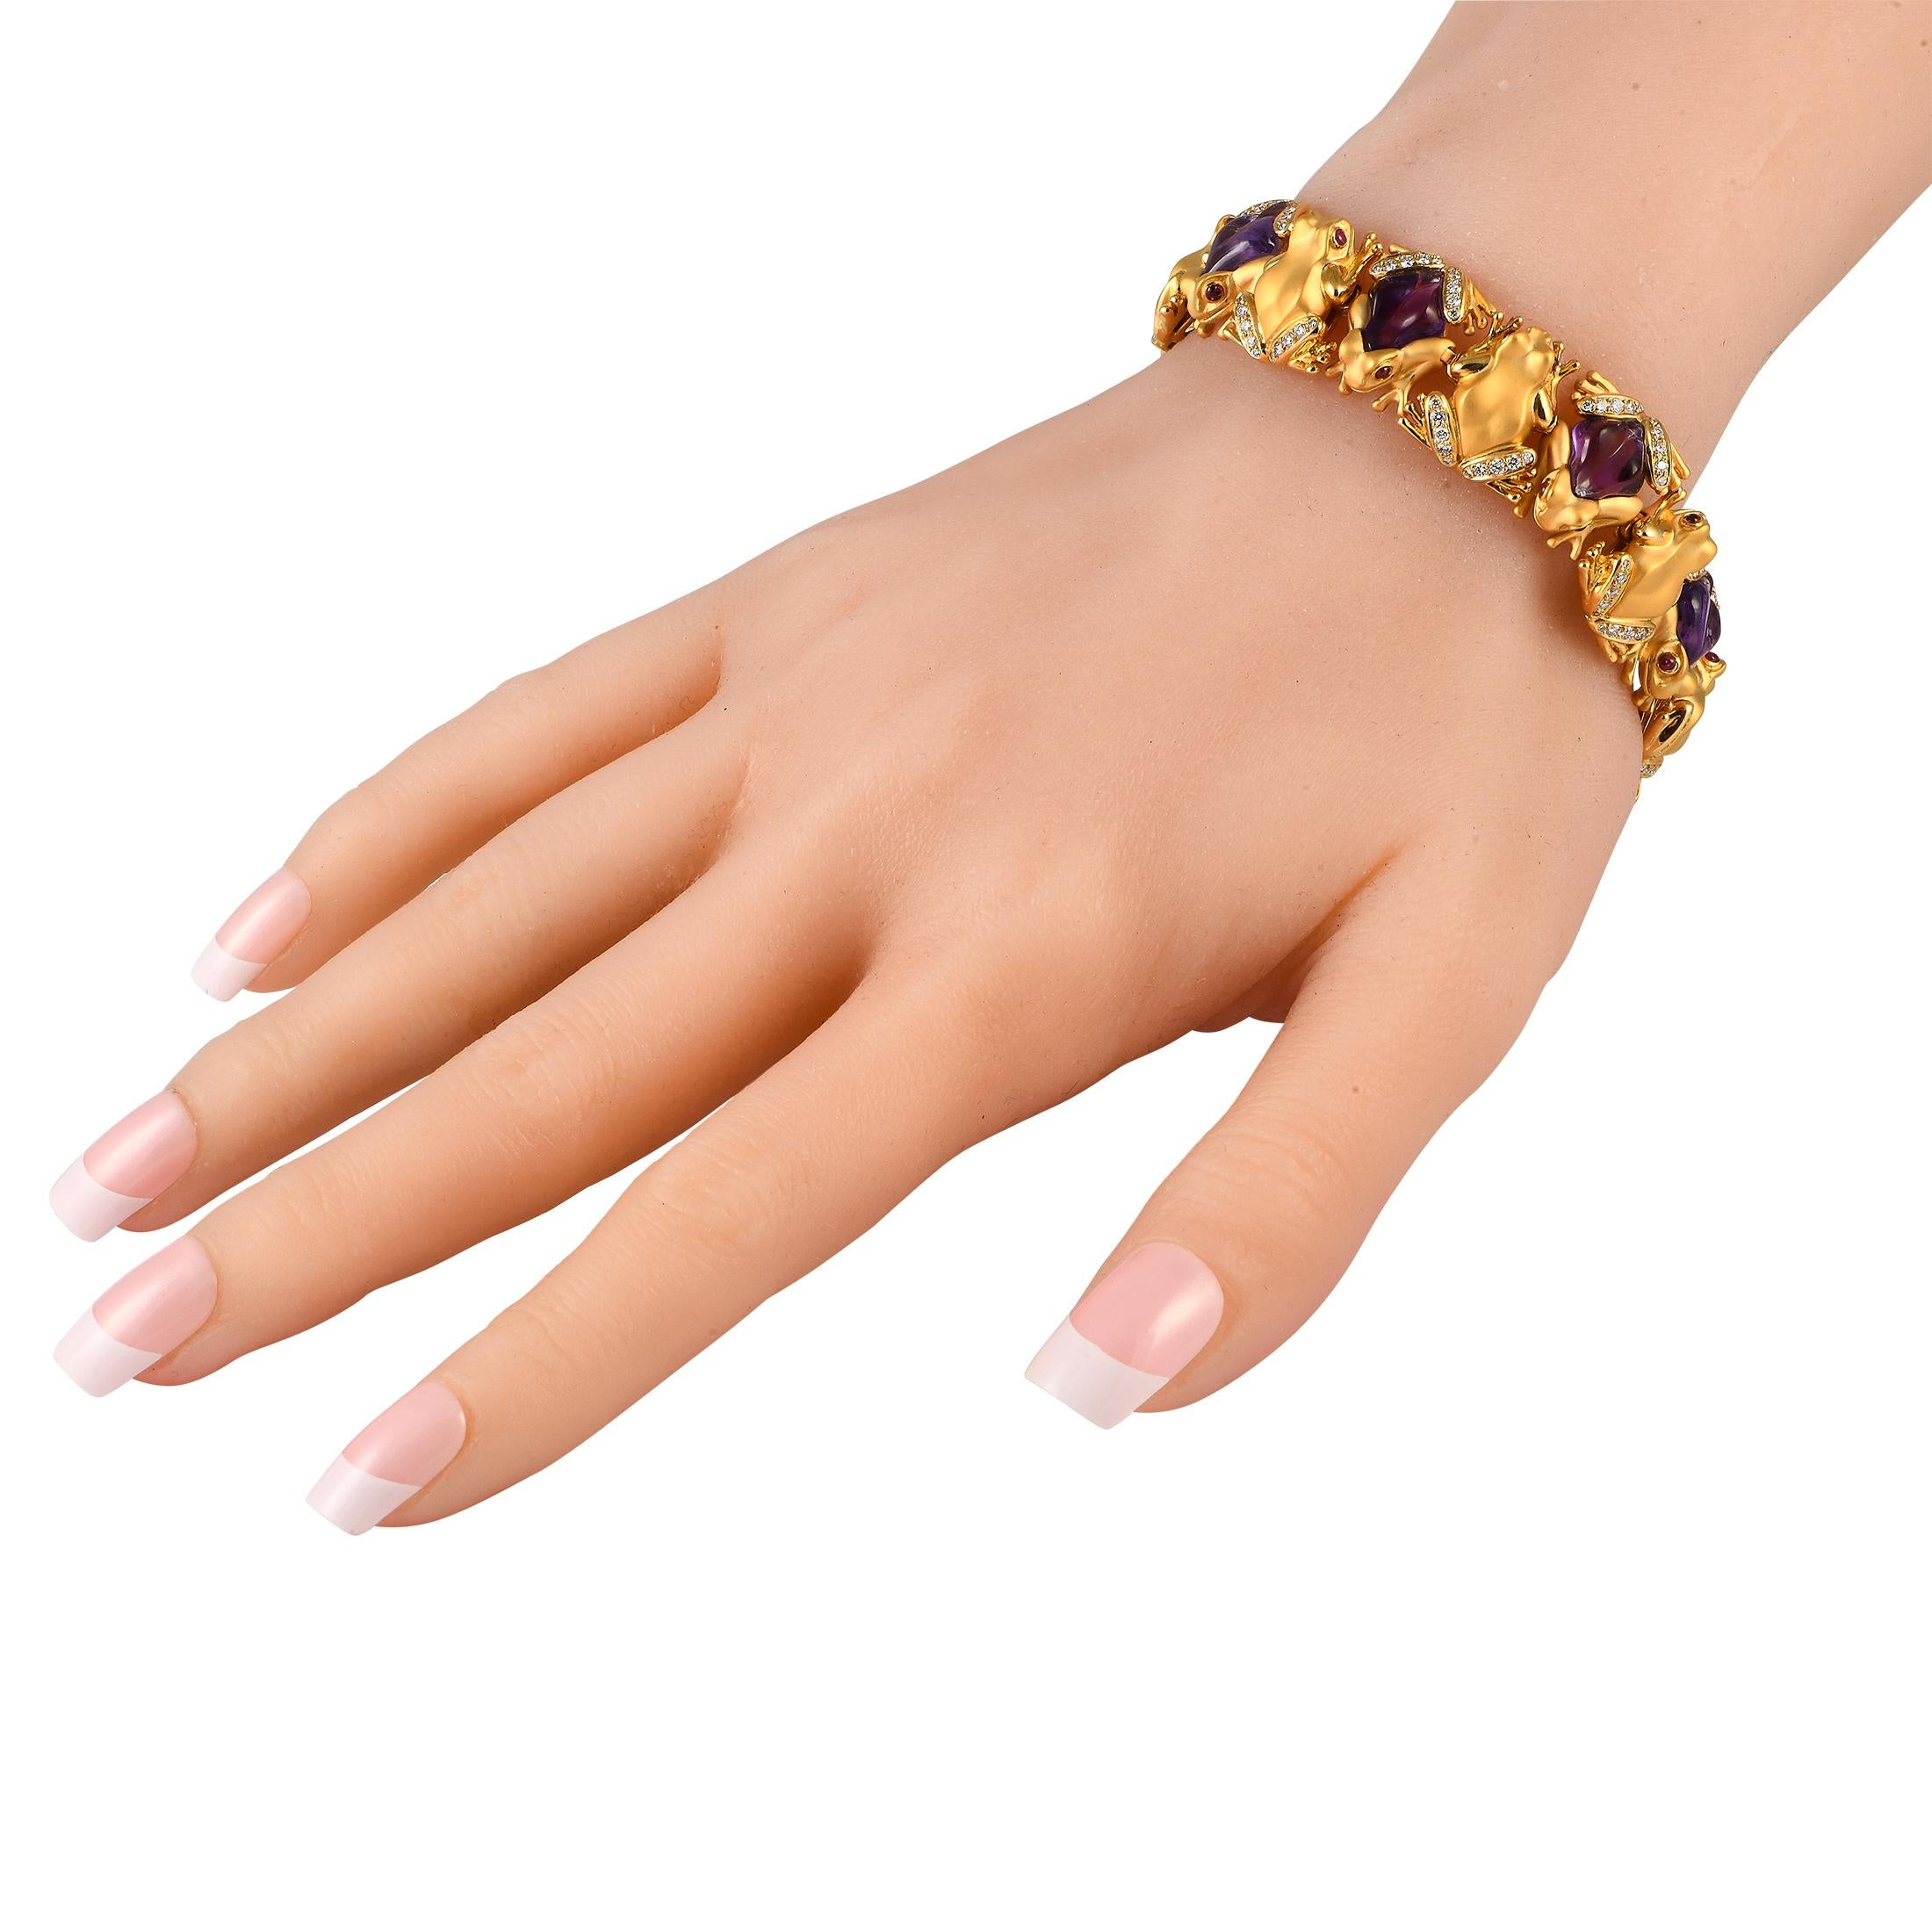 Une série de maillons en or jaune 18 carats en forme de grenouilles rend ce bracelet Carrera Y Carrera incroyablement charmant. Le design unique est encore plus remarquable grâce aux accents d'améthyste et aux diamants étincelants d'un poids total